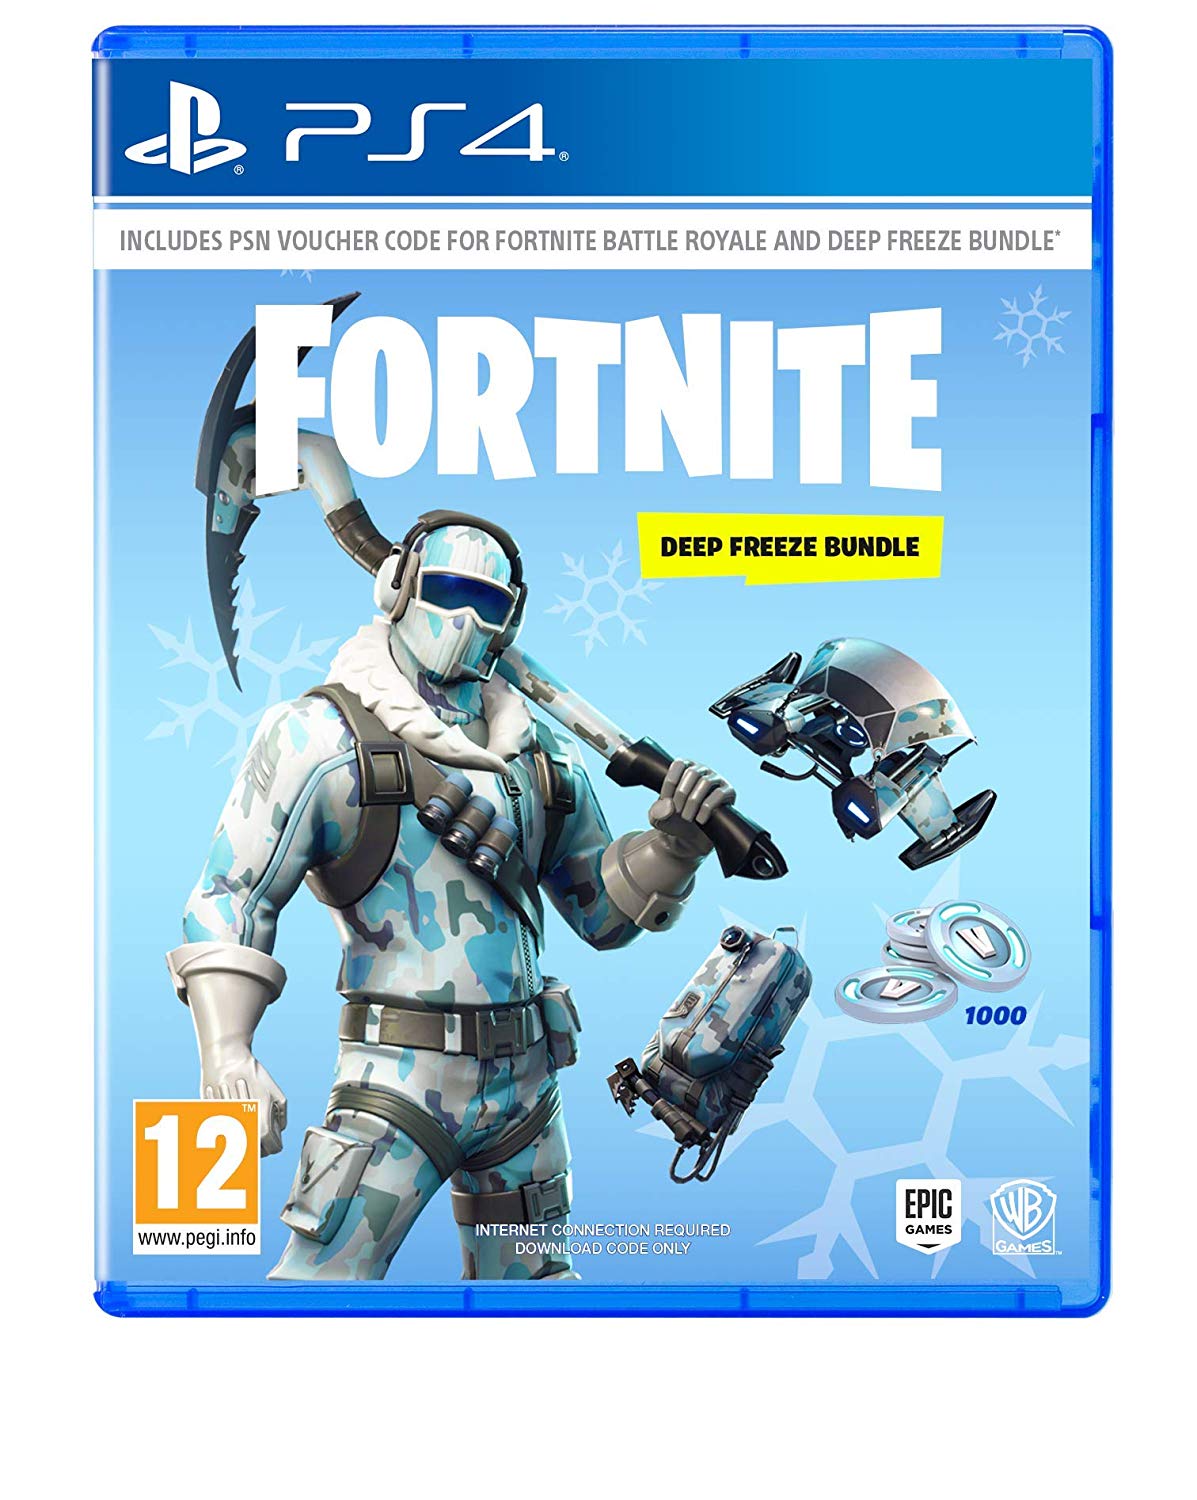 Fortnite: Deep Freeze Bundle Digital Download Key (Playstation 4)